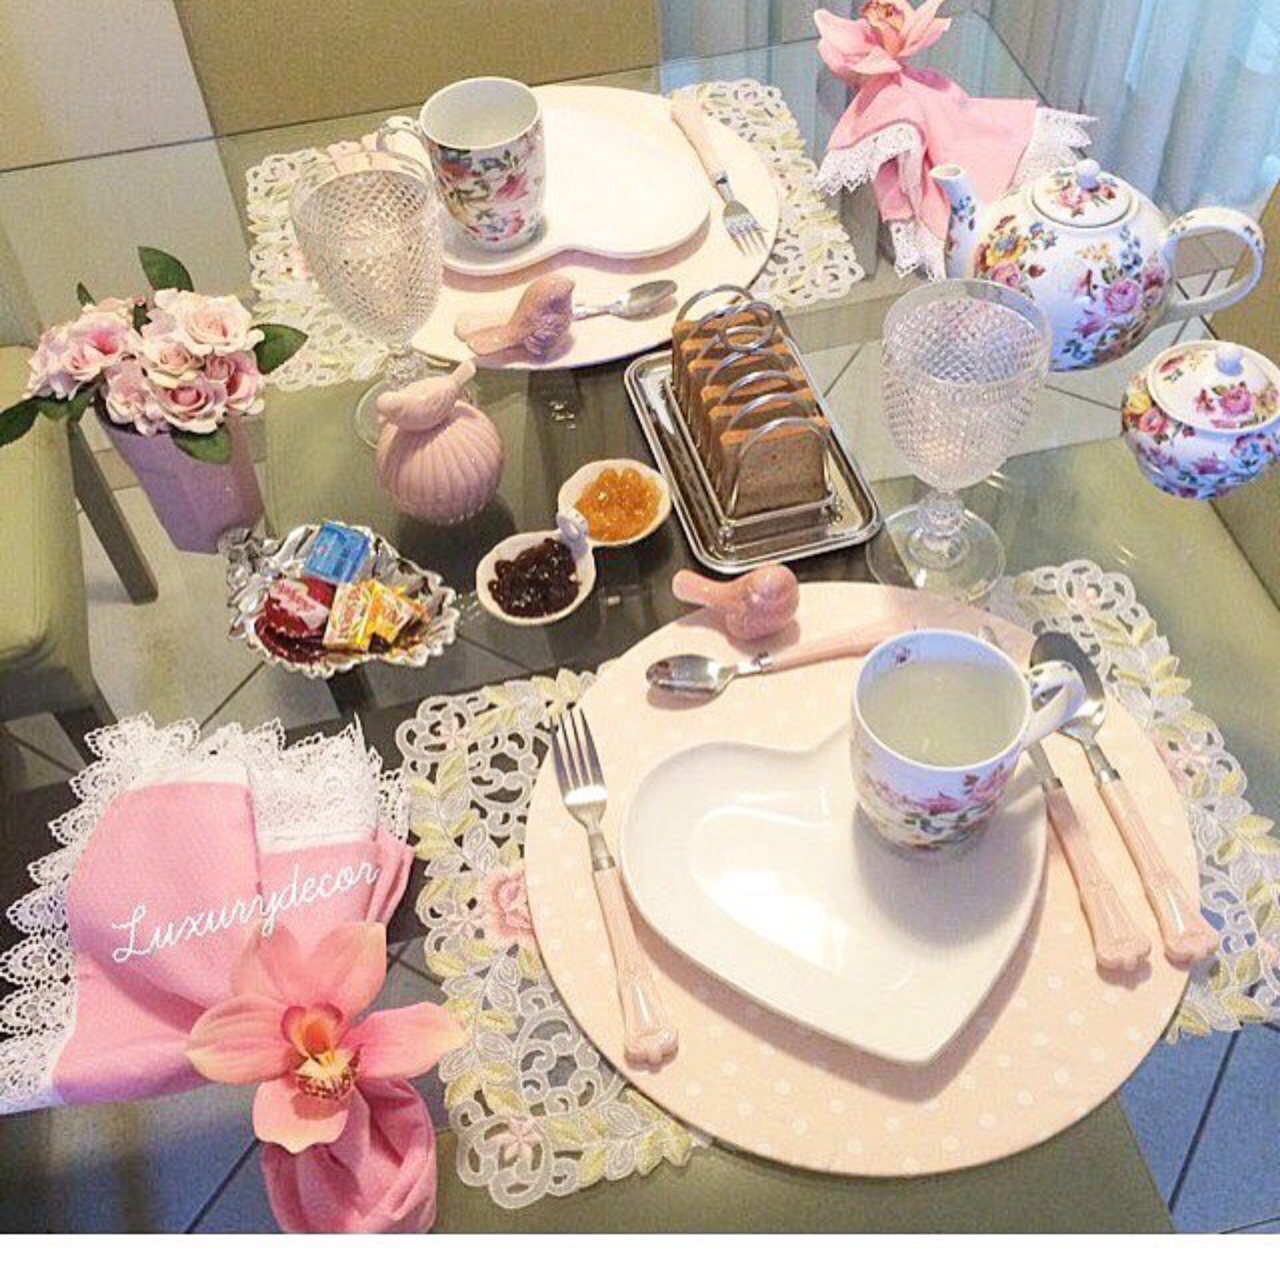 As mesas temáticas estão valendo. É mais uma forma de demonstrar o carinho com os convidados ou com a data a ser comemorada. Instagram @luxurydecor